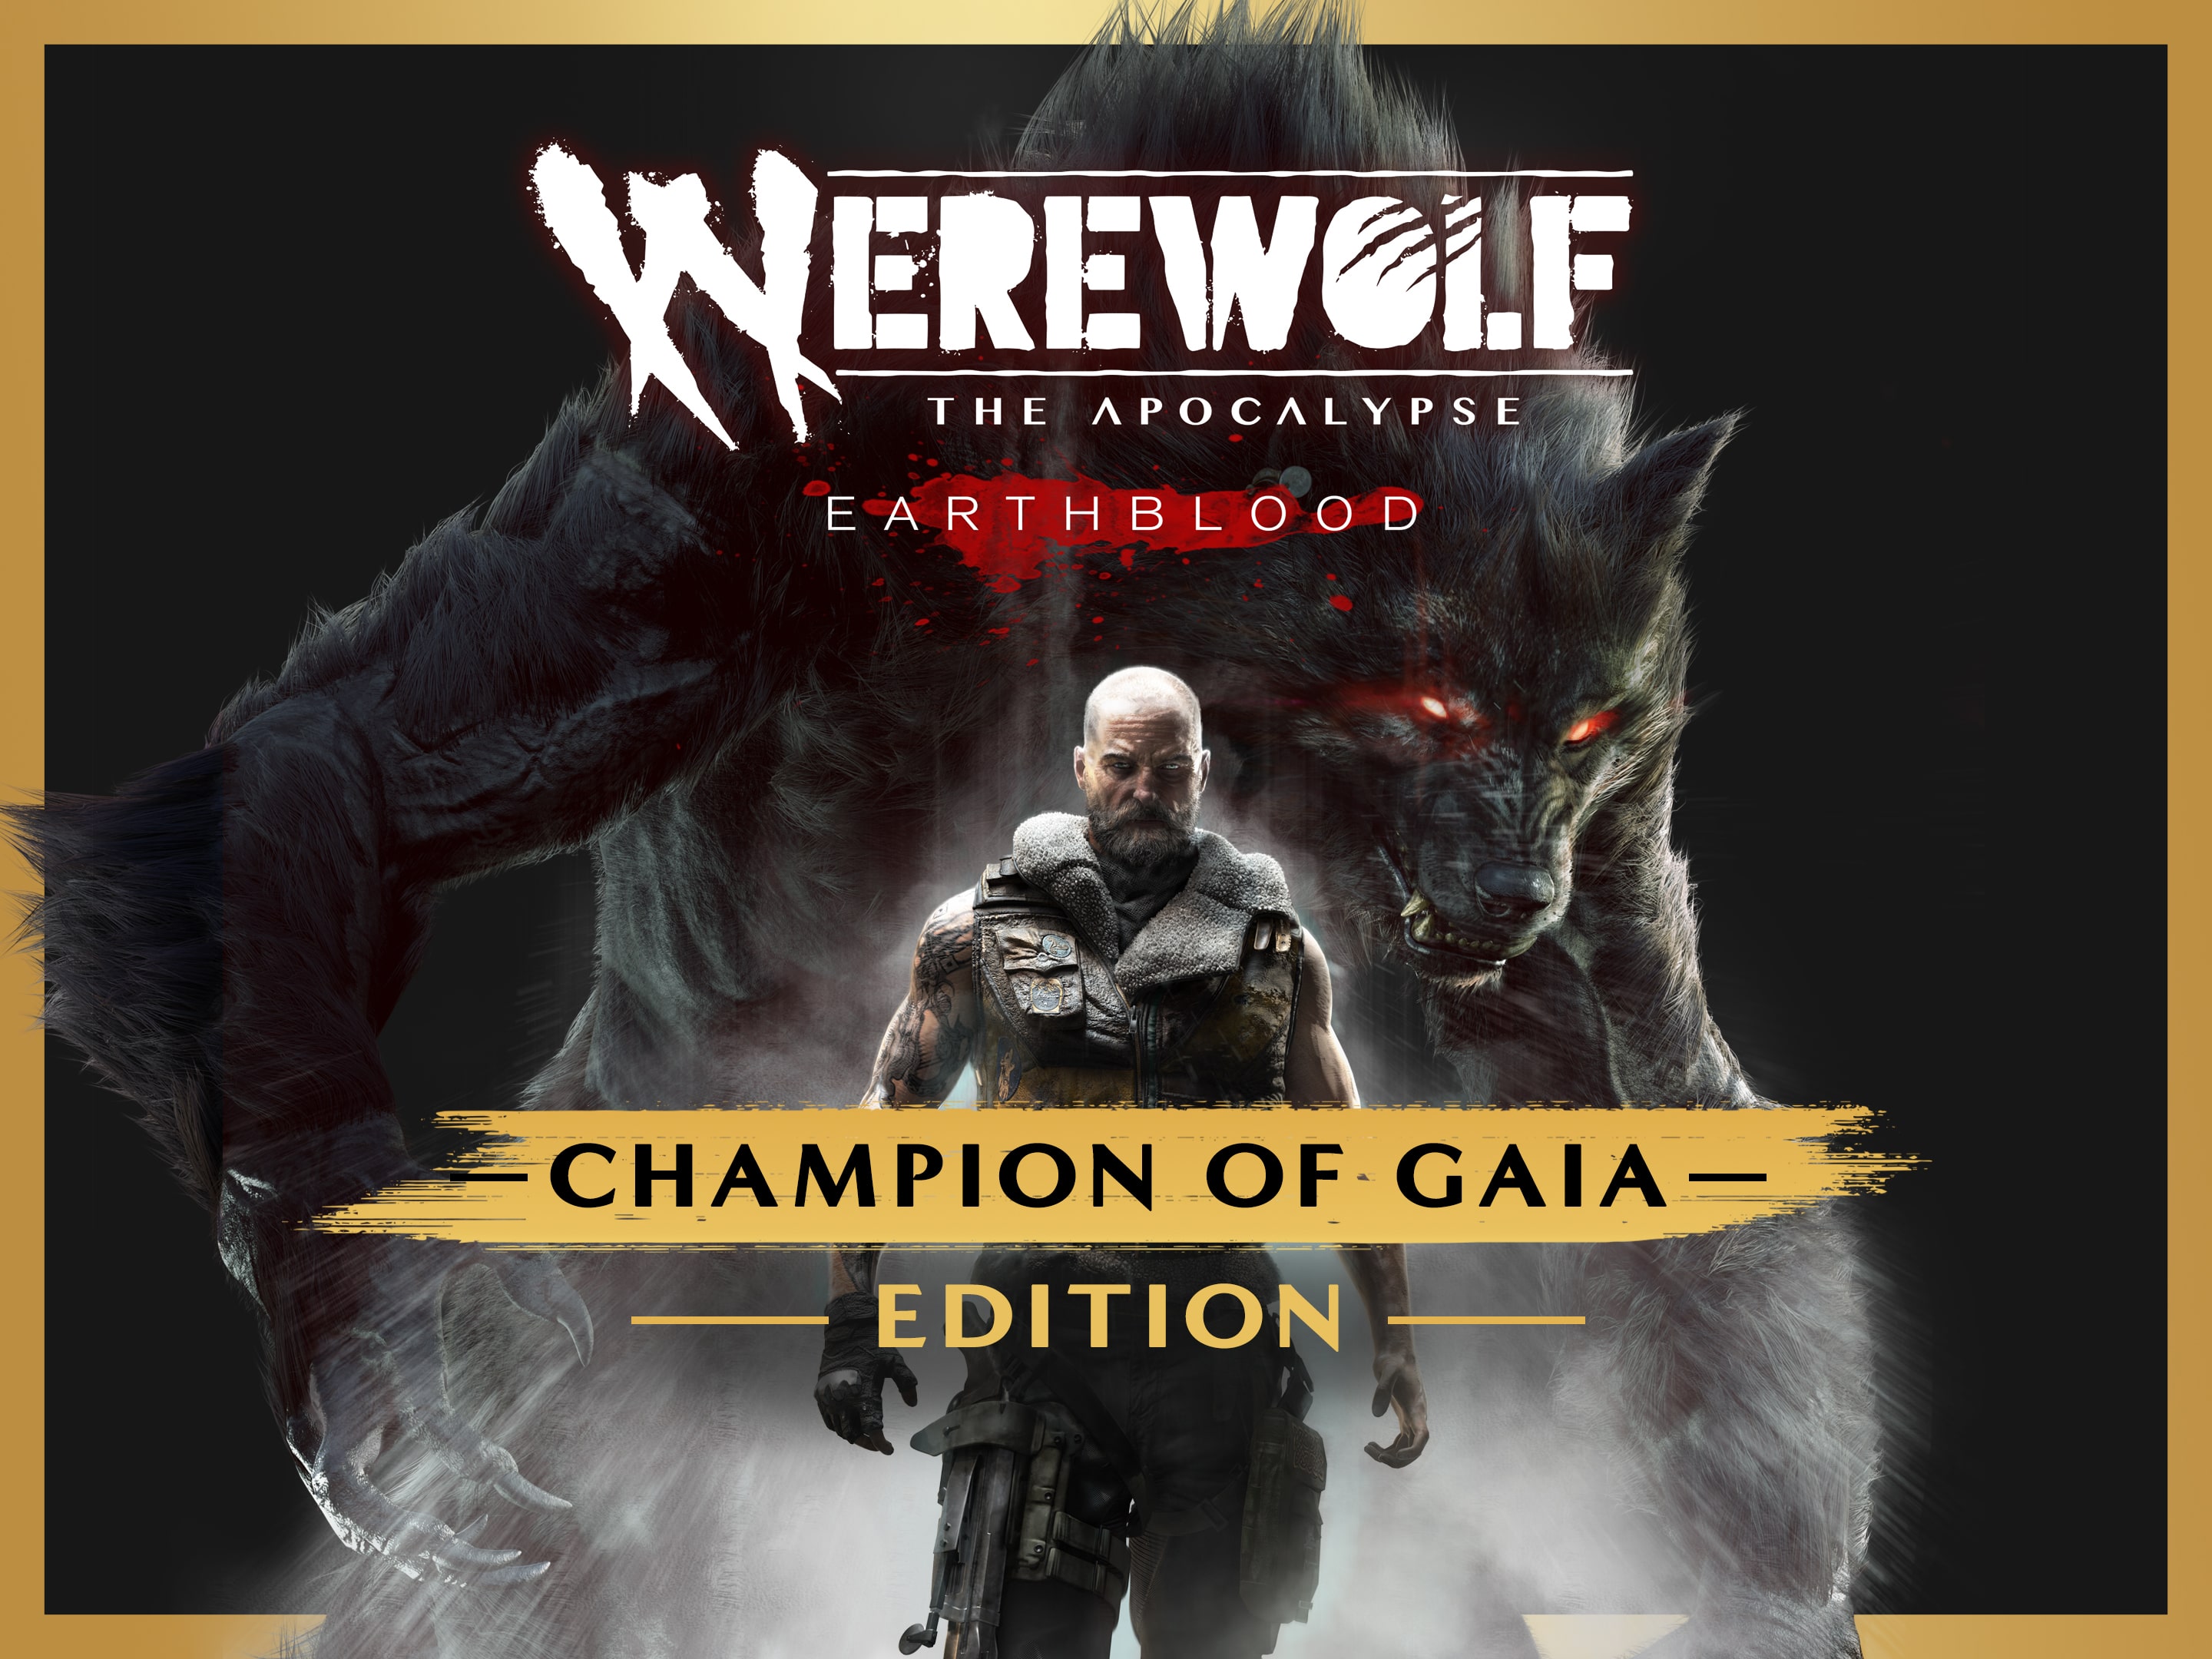 new werewolf game ps4